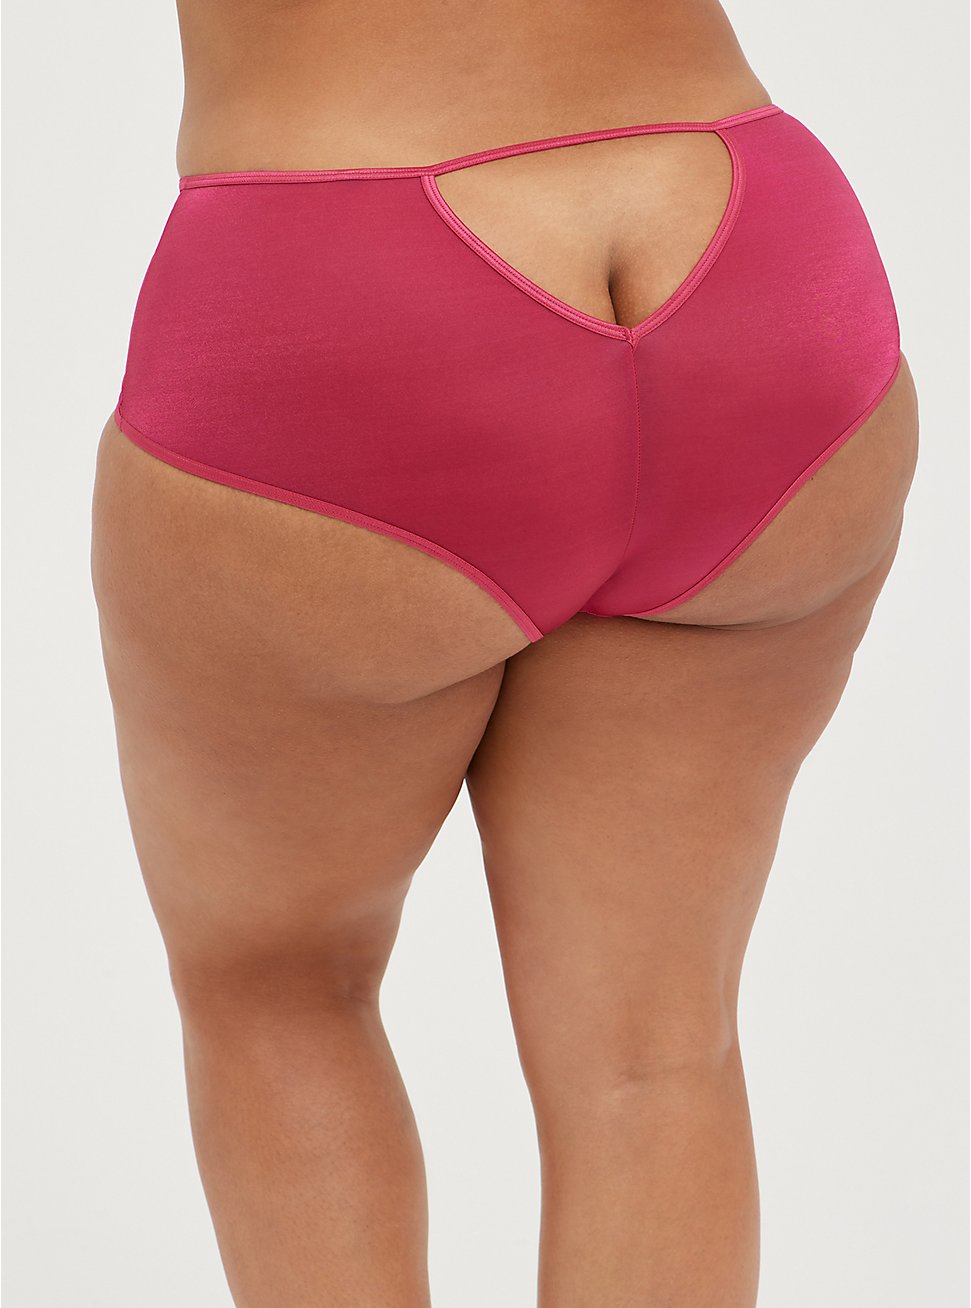 Cutout Cheeky Panty - Microfiber Glossy Pink, VIVACIOUS, hi-res